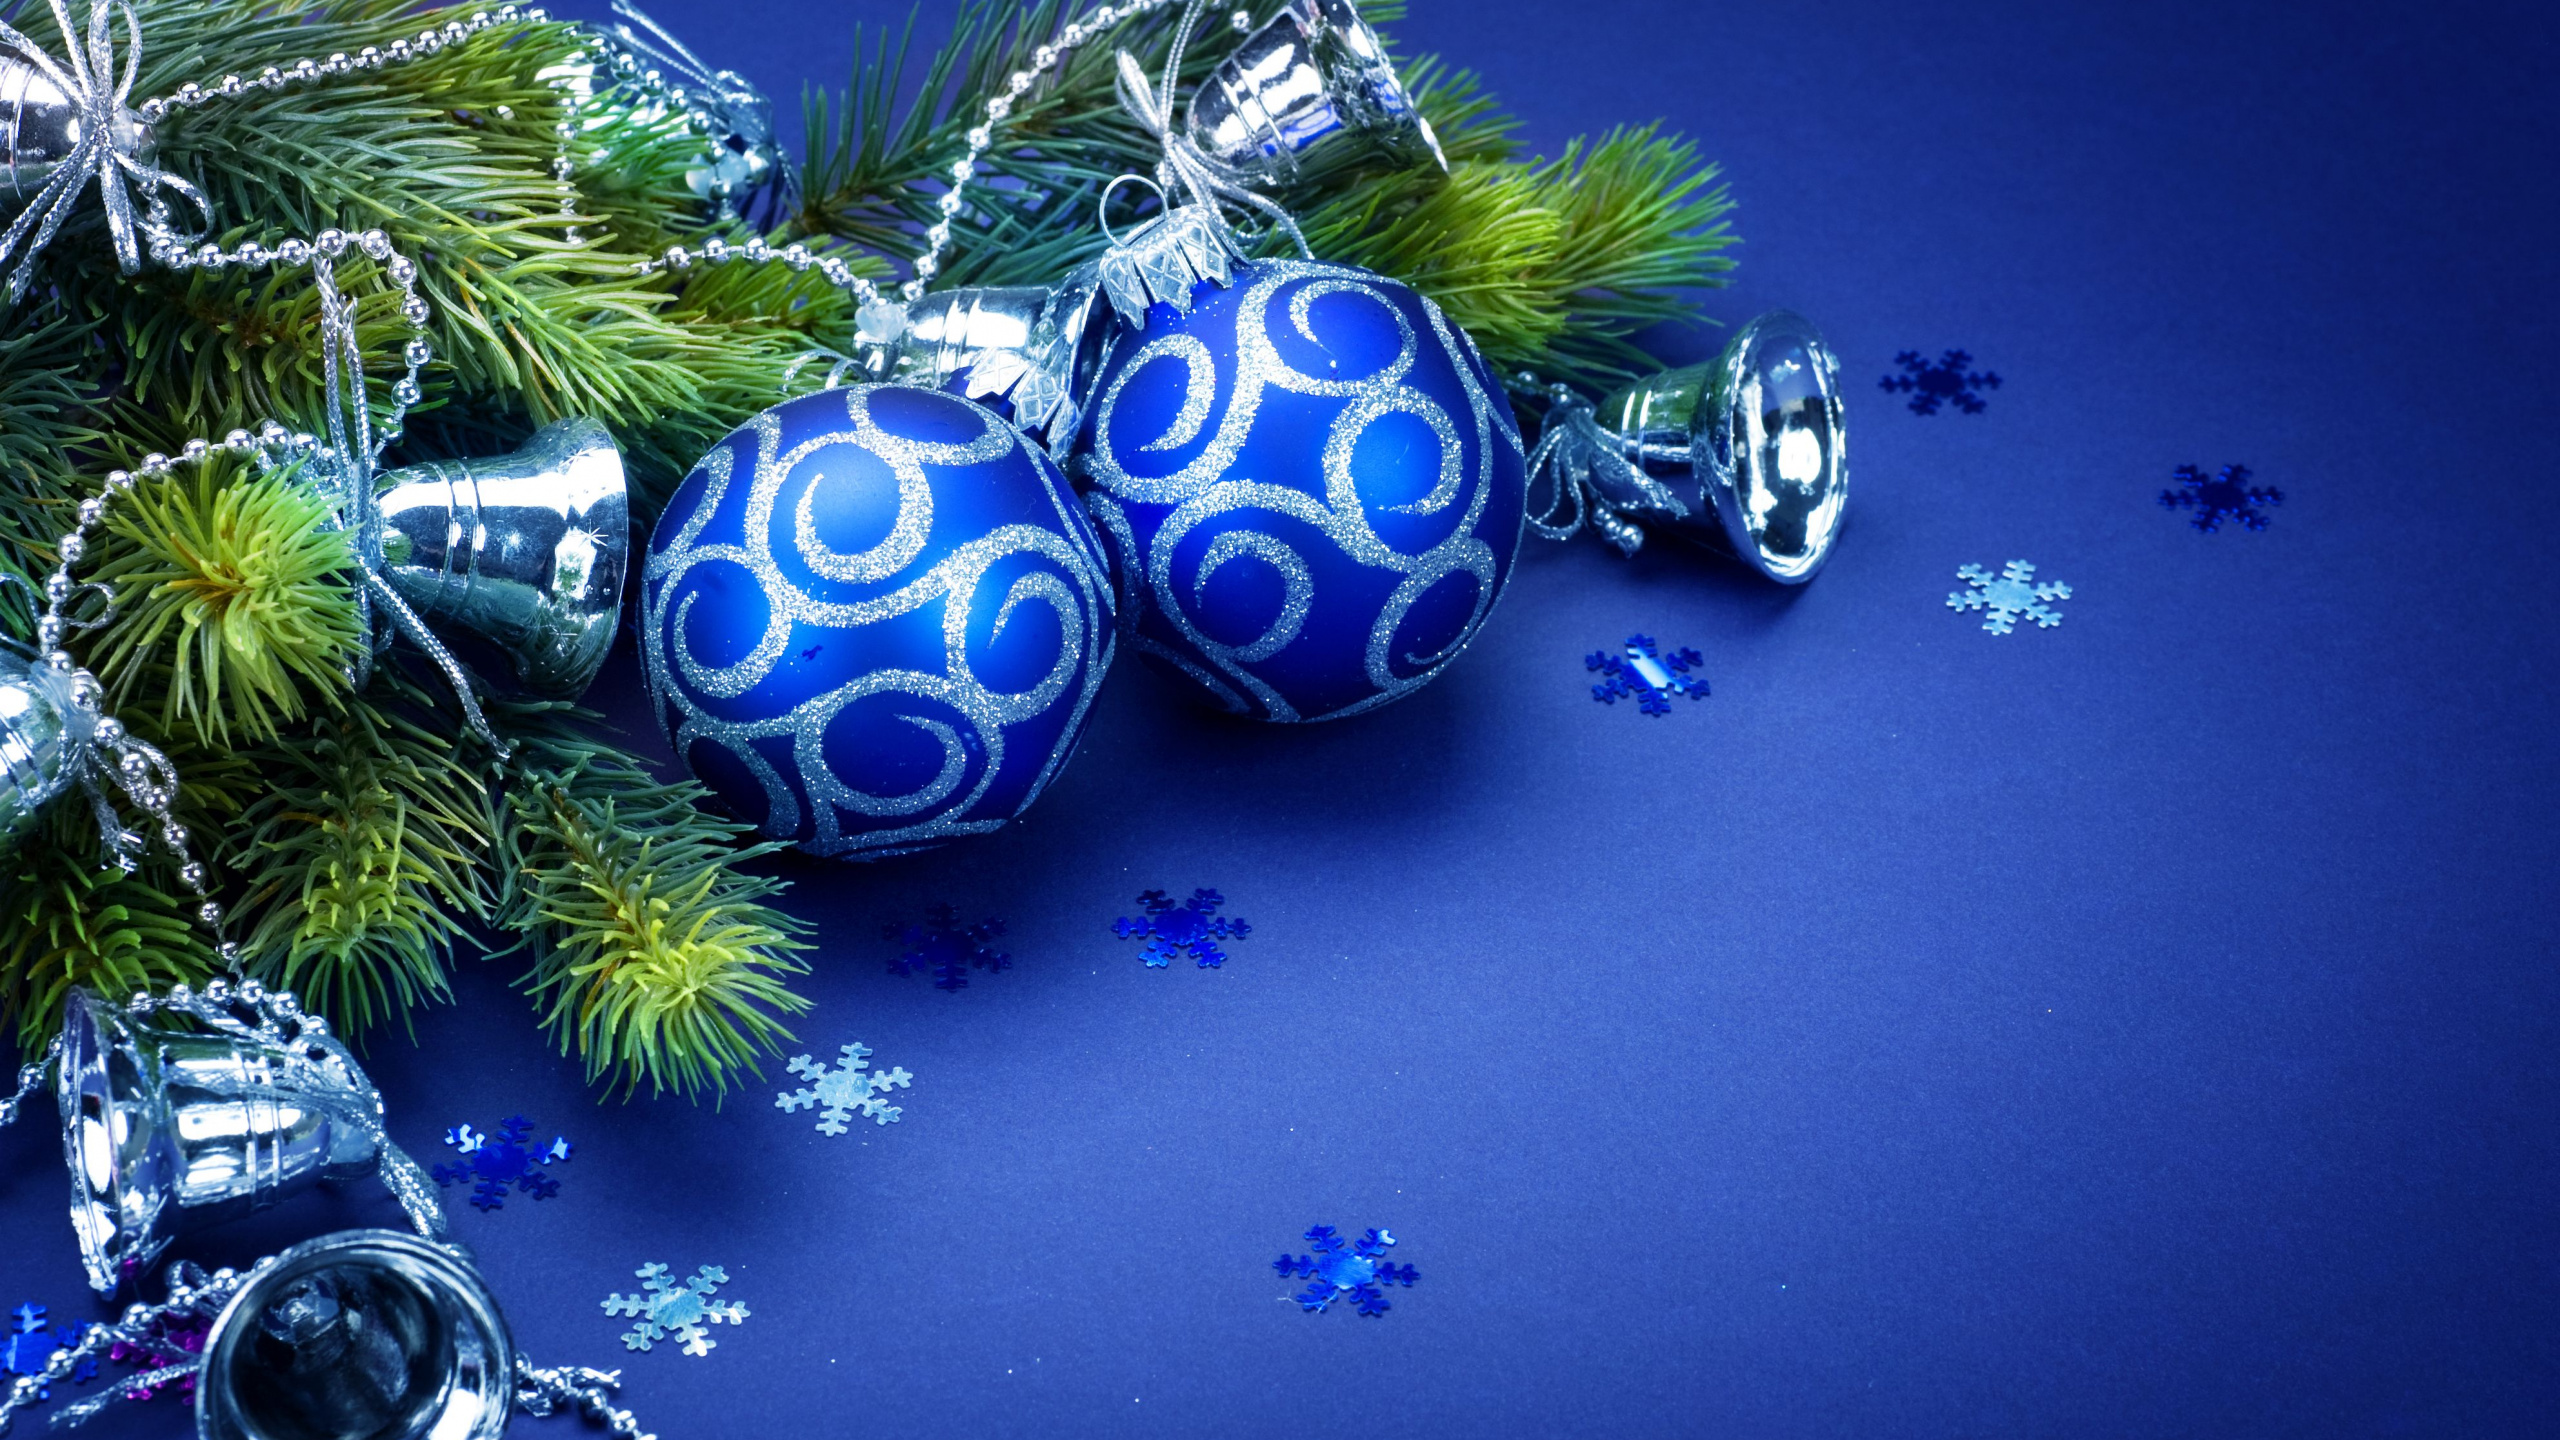 Weihnachten, Christmas Ornament, Blau, Weihnachtsdekoration, Baum. Wallpaper in 2560x1440 Resolution